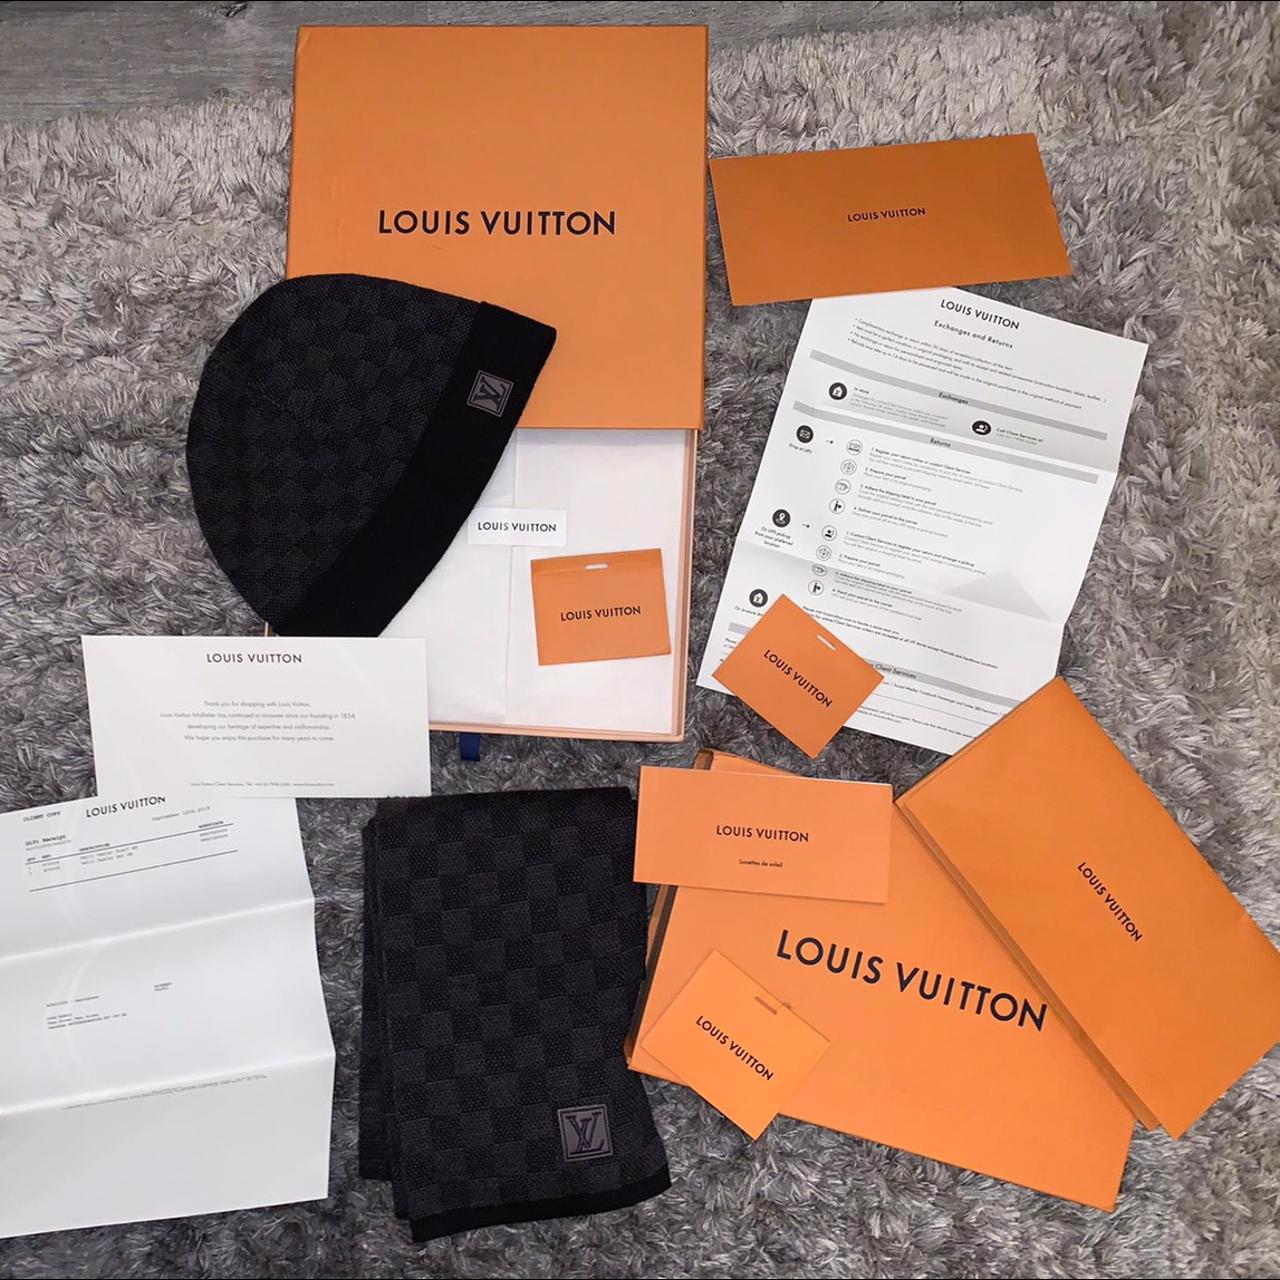 Louis Vuitton beanie Louis Vuitton scarf 100% - Depop